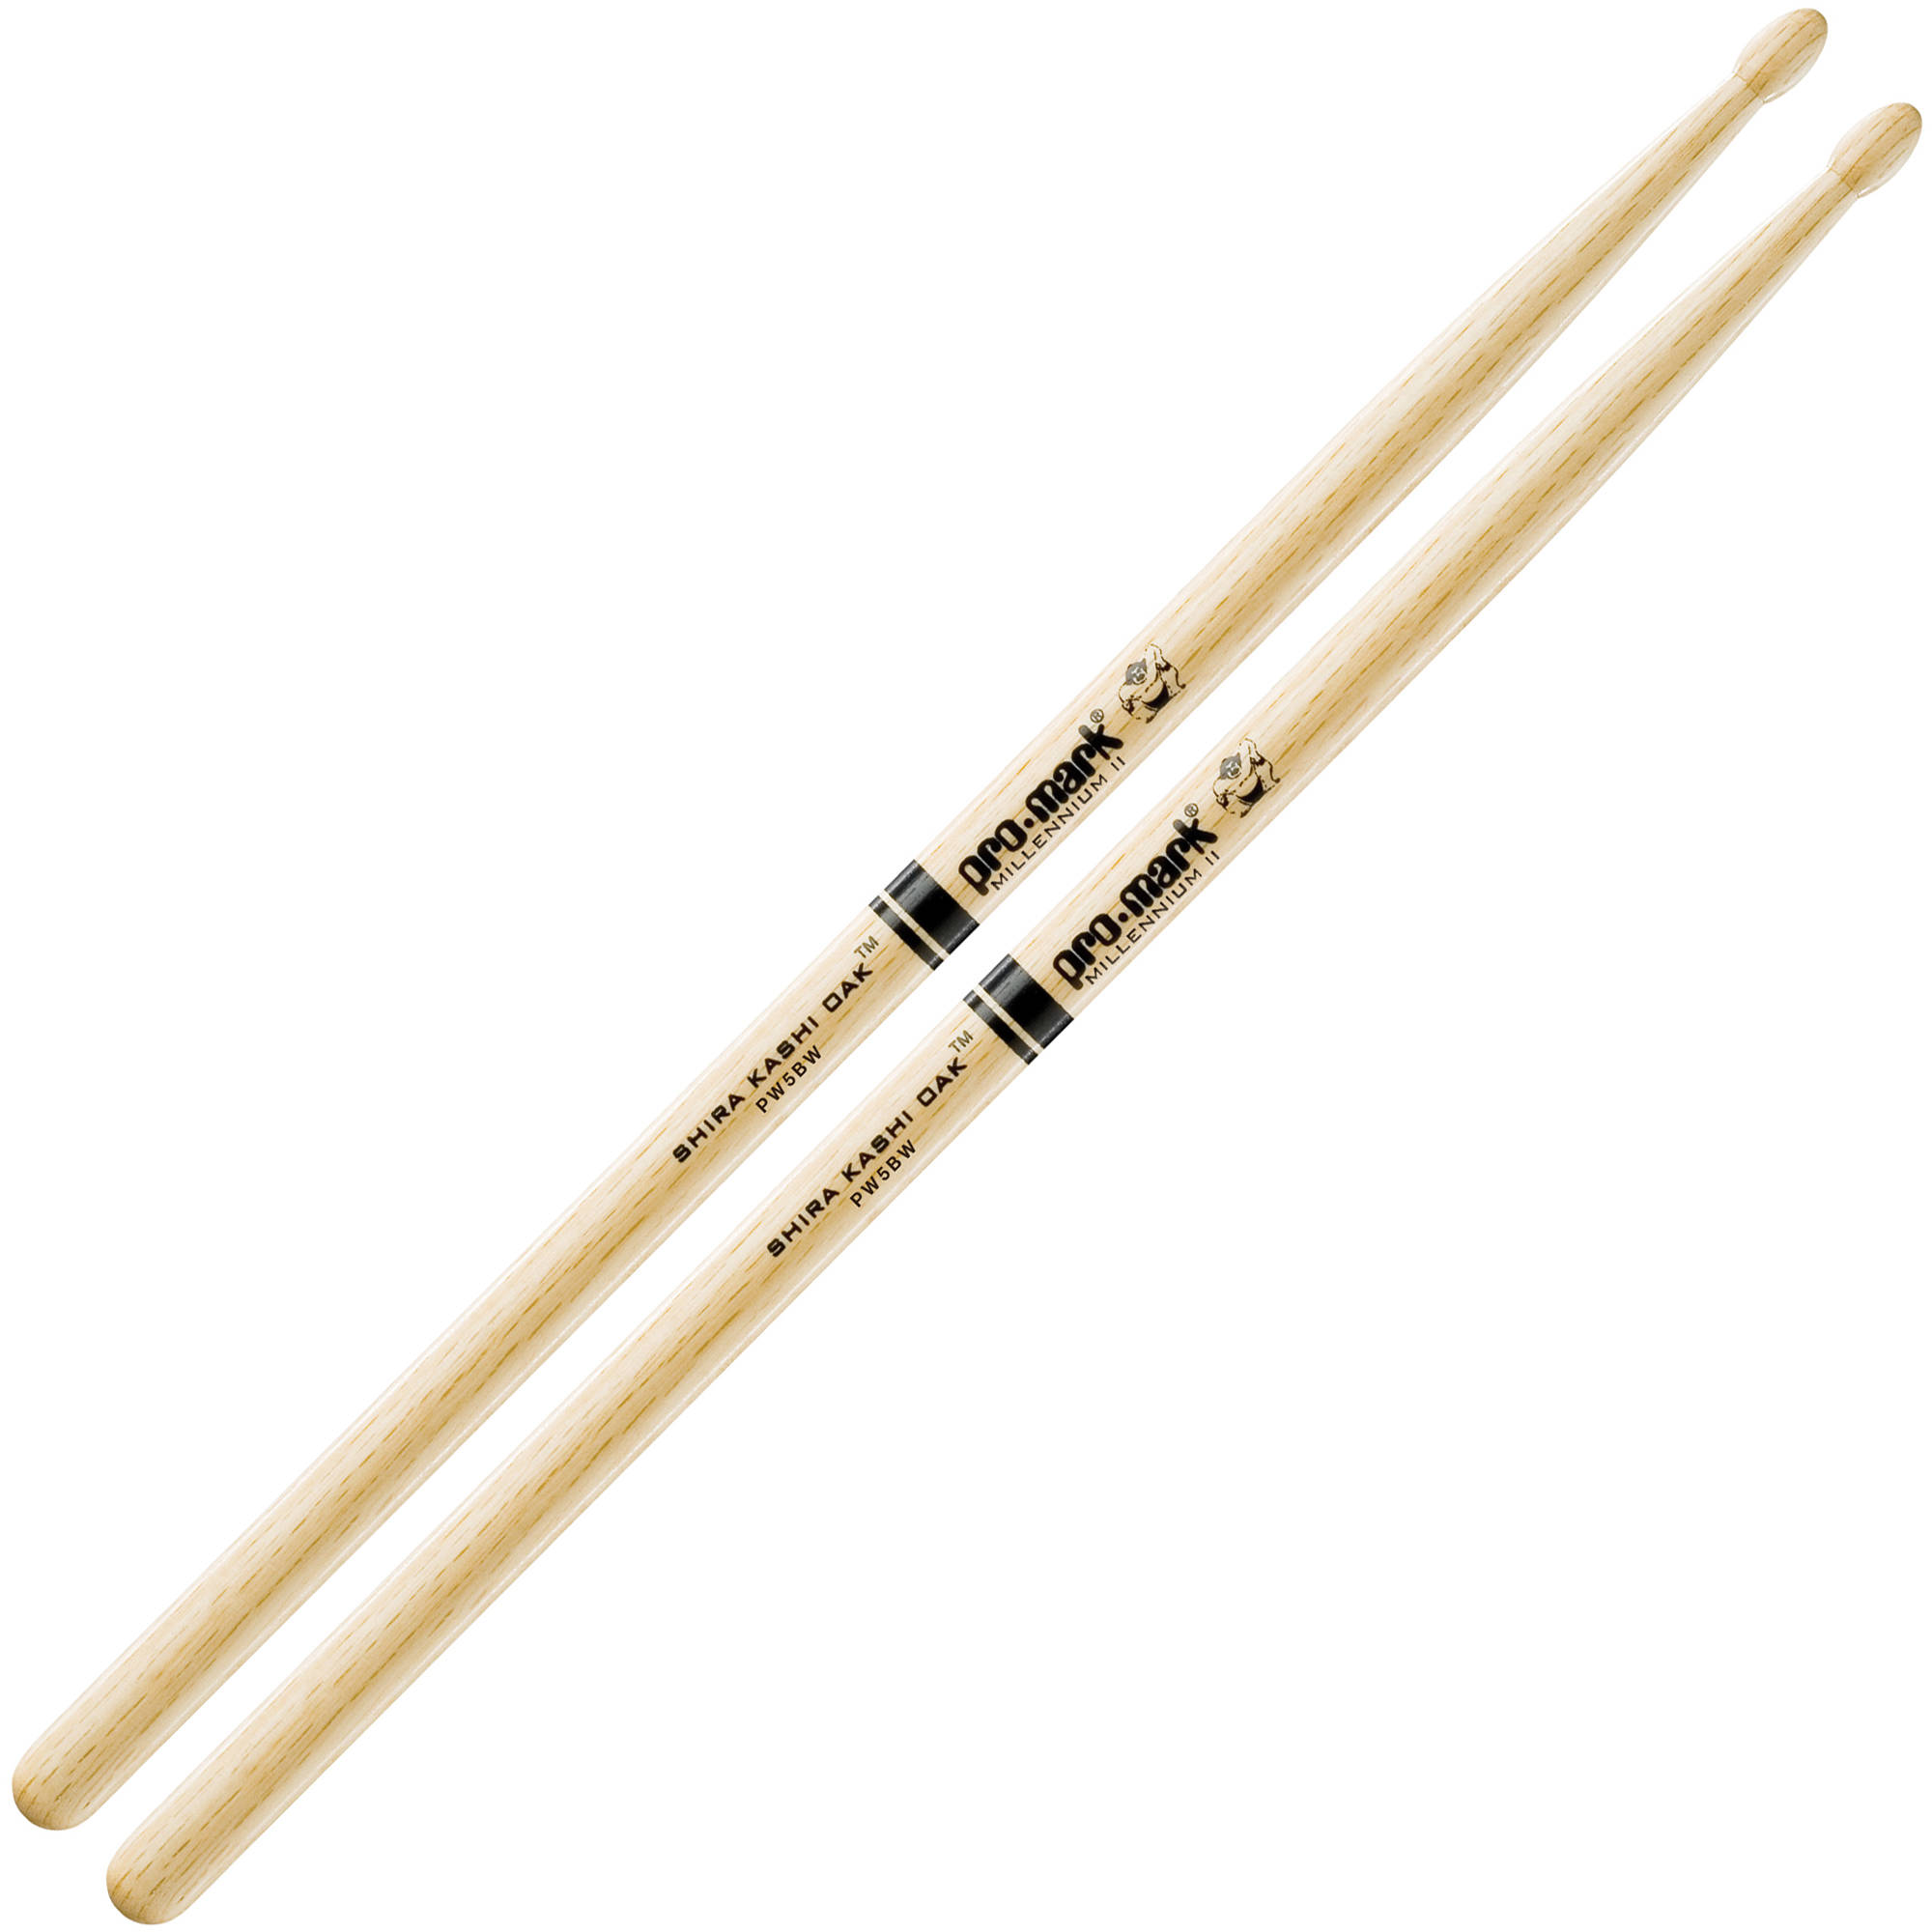 An image of Promark Shira Kashi Oak 5B Wood Tip Drumstick - Gift for a Drummer | PMT Online